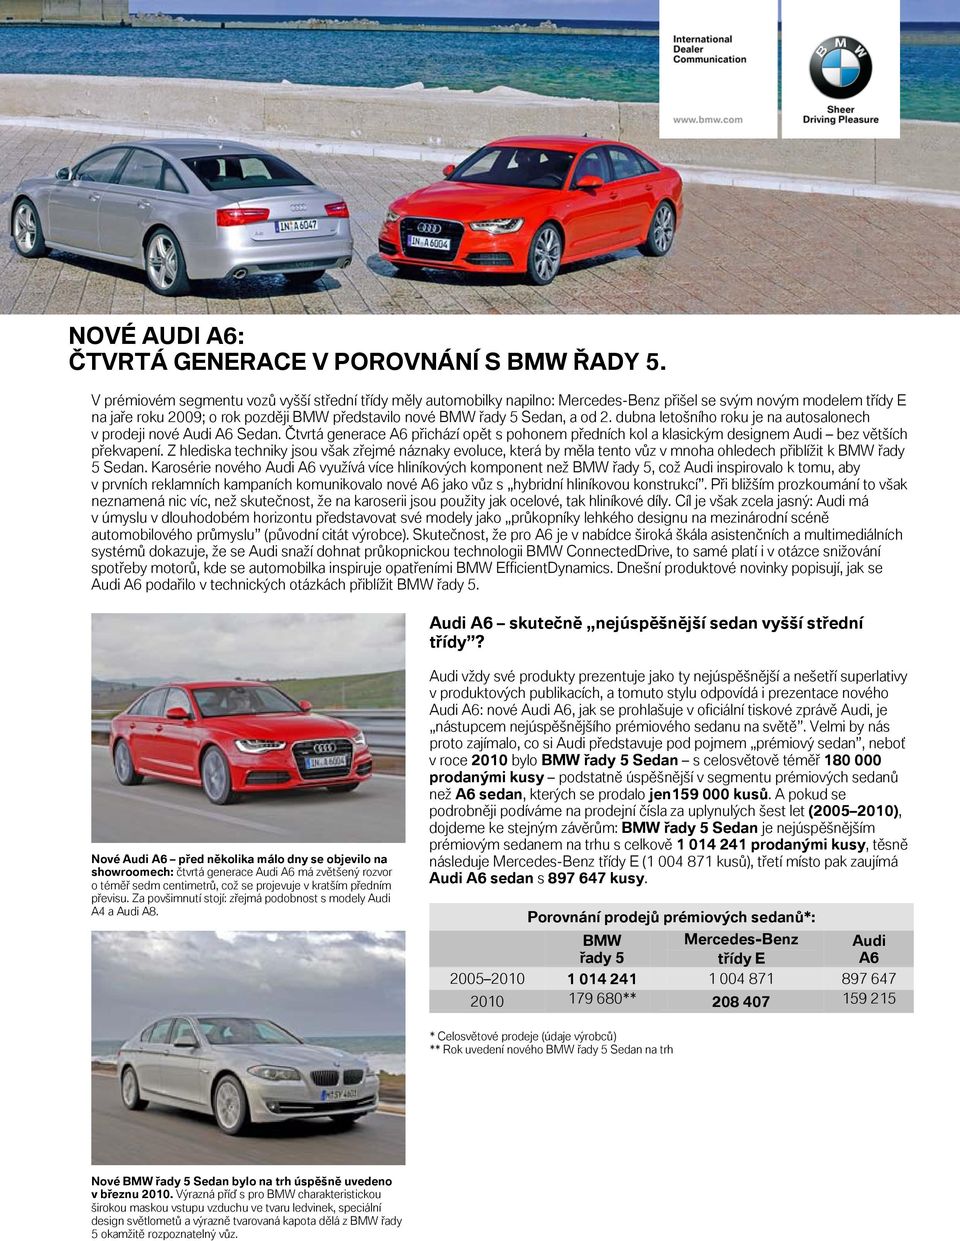 2. dubna letošního roku je na autosalonech v prodeji nové Audi A6 Sedan. Čtvrtá generace A6 přichází opět s pohonem předních kol a klasickým designem Audi bez větších překvapení.